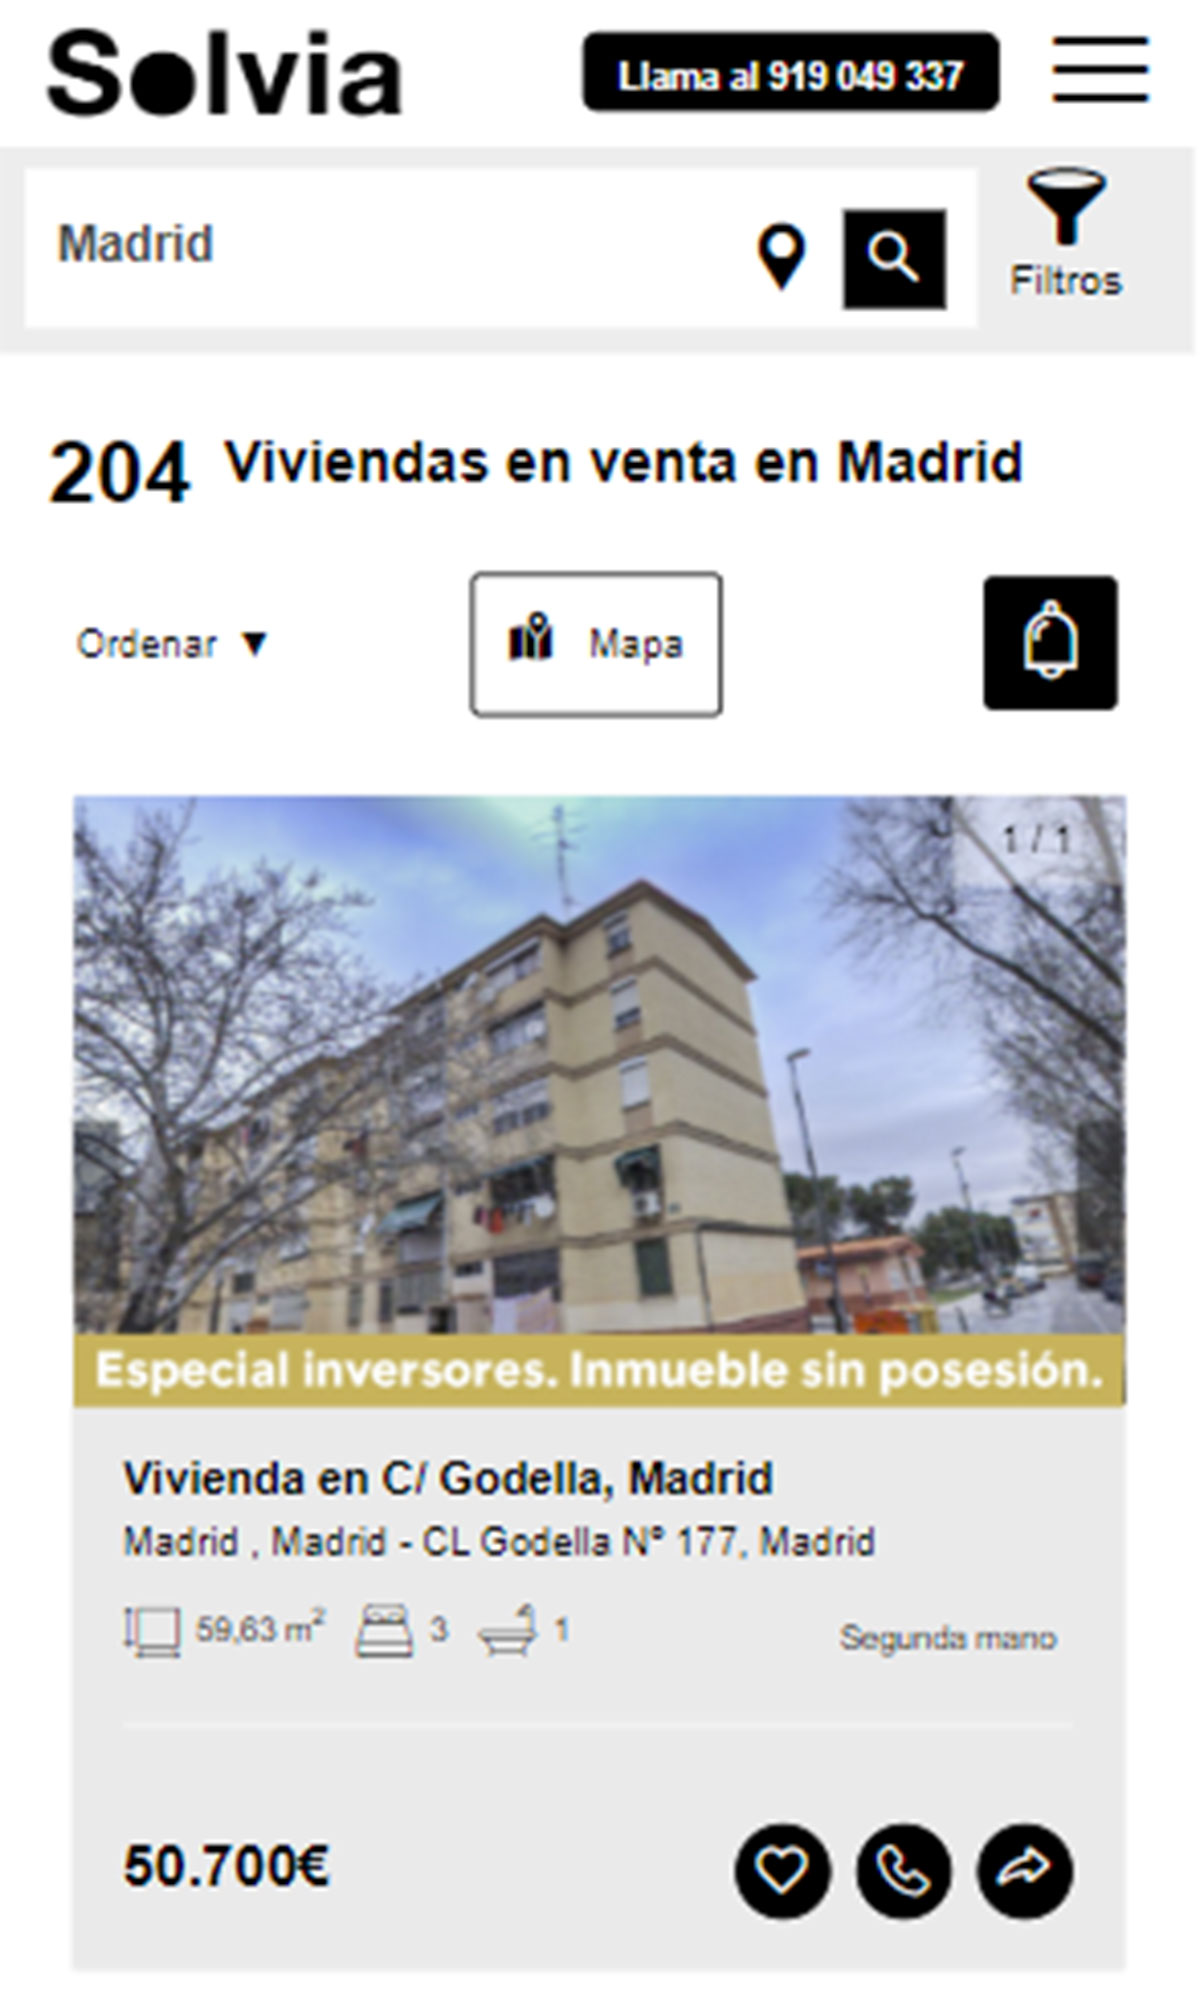 Piso en la ciudad de Madrid por 50.700 euros